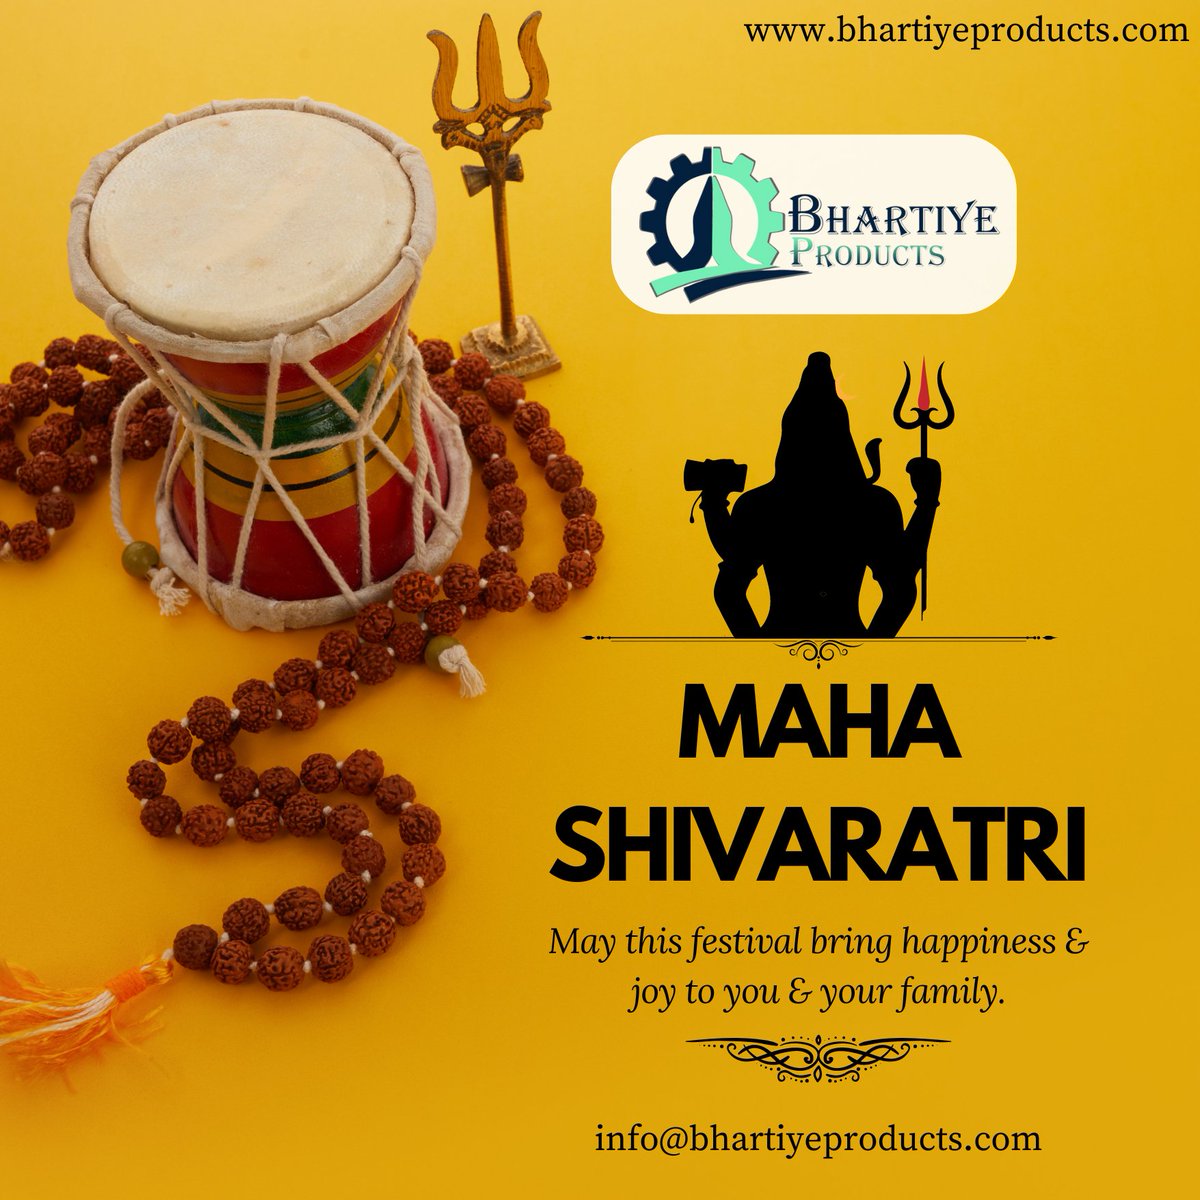 Happy Maha Shivaratri! May this festival bring peace and joy to you and your family. 📷
#MahaShivaratri
#OmNamahShivaya
#FestivalOfShiva
#Bhakti #HarHarMahadev
#ShivRatri #Devotional #Hinduism
#BhartiyeProducts #Peace #Prosperity #Joy #Family